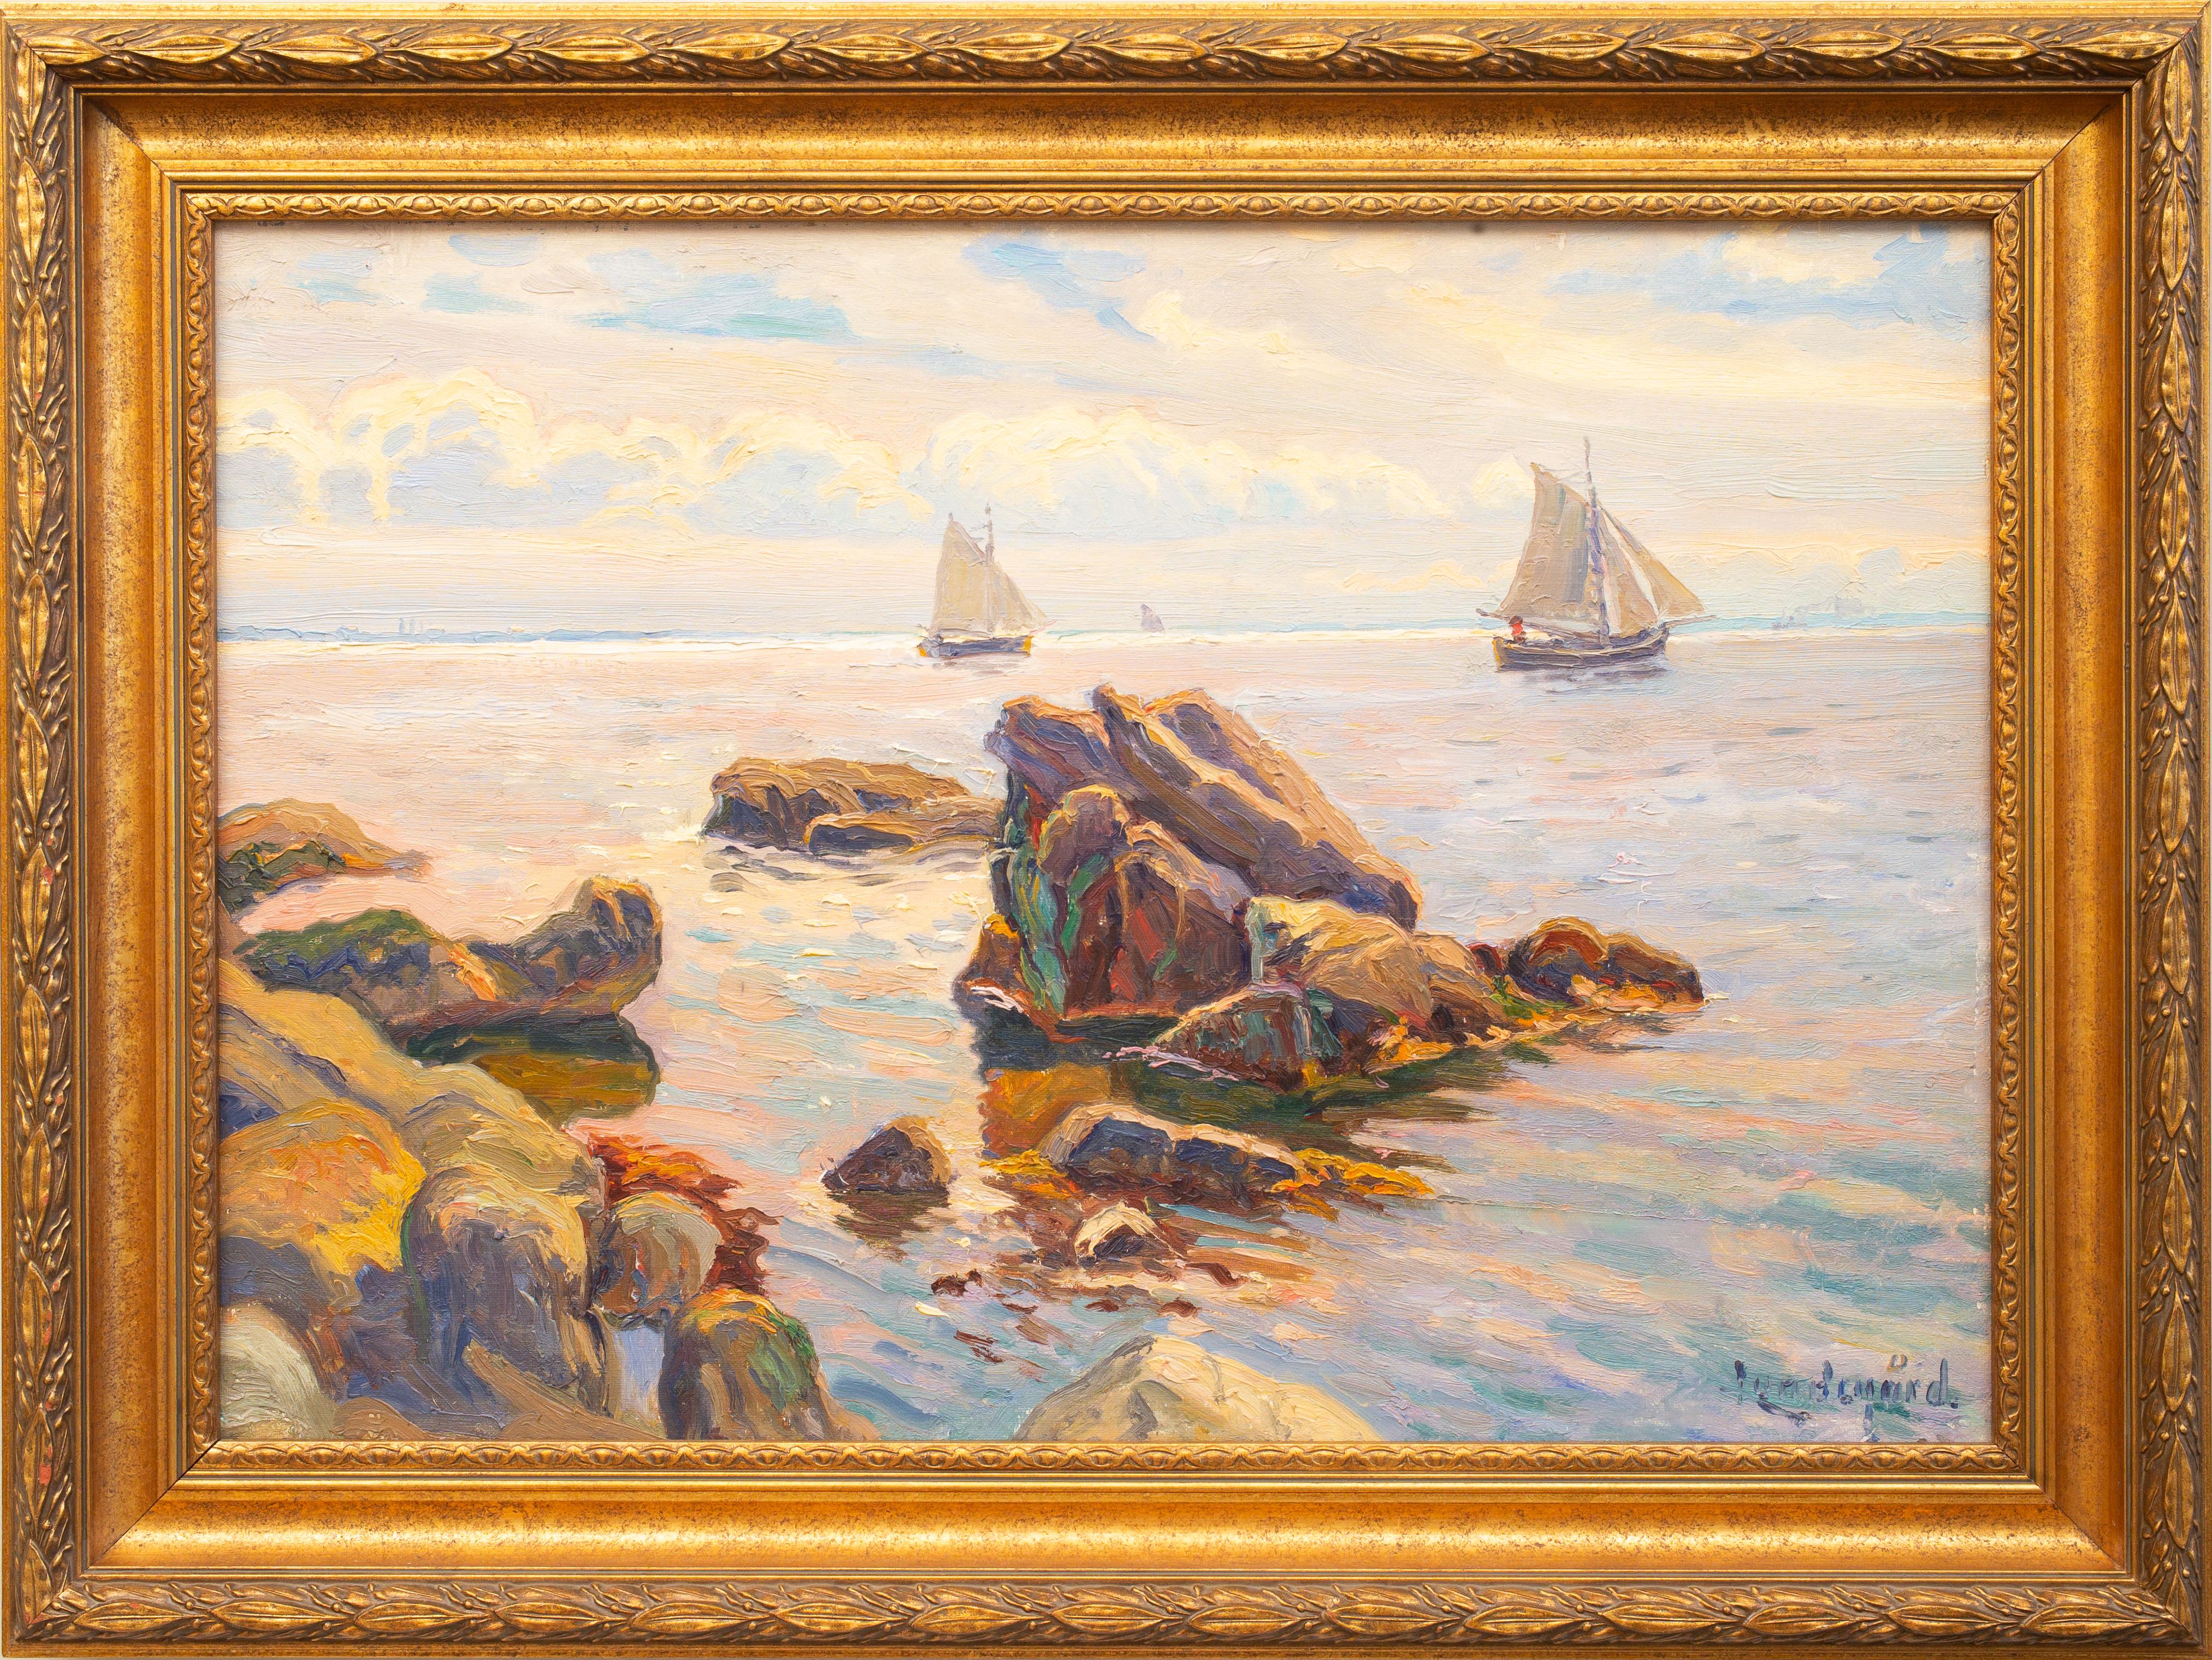 Segelboote im schwedischen Archipelago-Gemälde von Justus Lundegrd, Öl auf Leinwand – Painting von Justus Lundegård